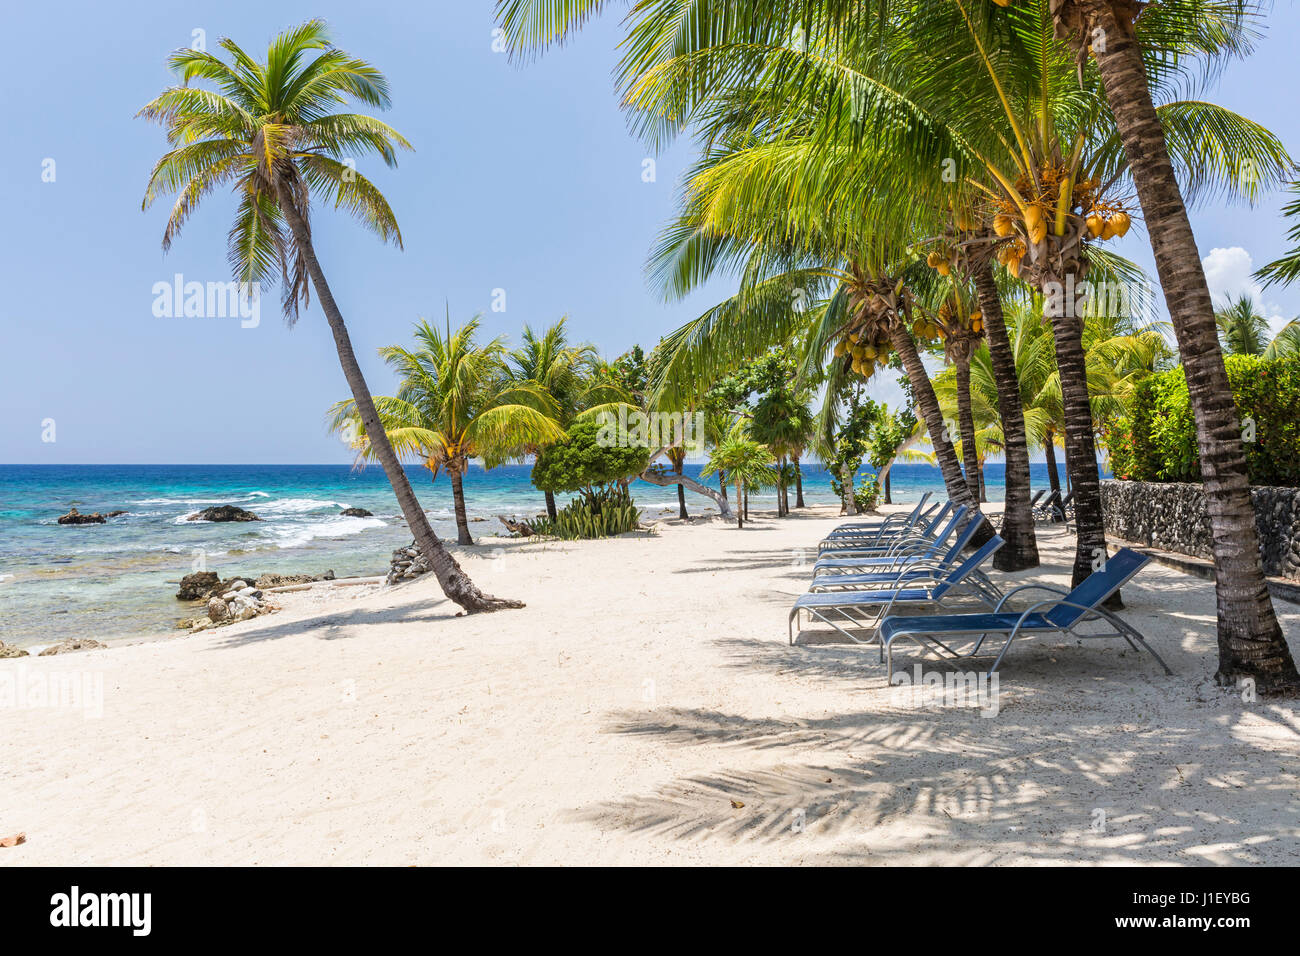 Kokosnuss-Palmen und Liegestühlen säumen den schönen Sandstrand am Lighthouse Point in der Nähe der Meridian-Resorts in Roatan, Honduras. Stockfoto